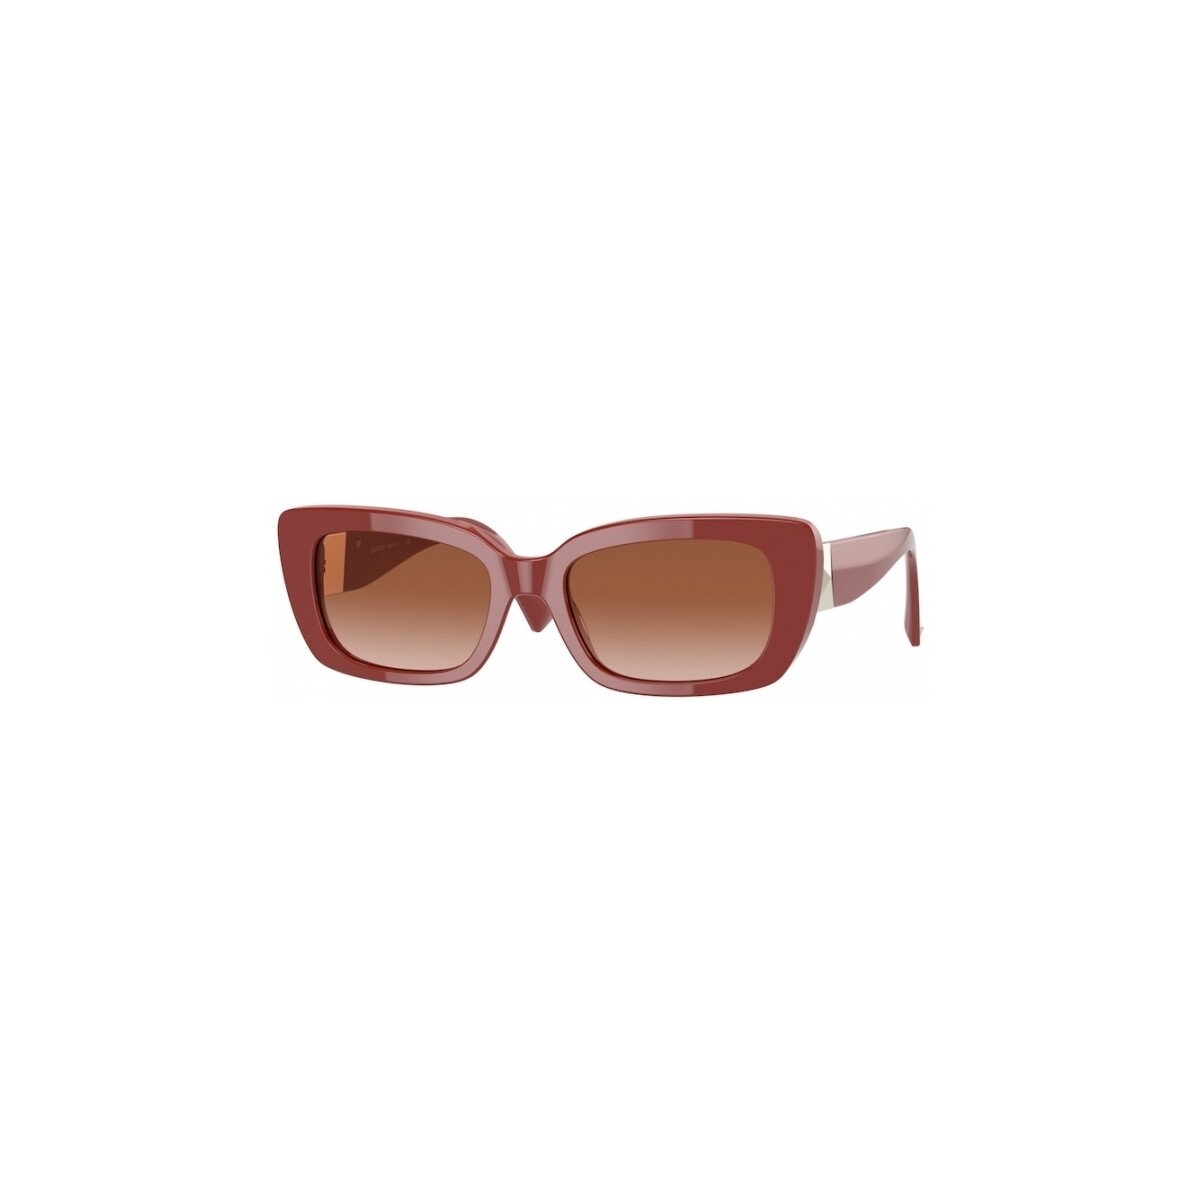 Orologi & Gioielli Donna Occhiali da sole Valentino VA4096 Occhiali da sole, Rosso/Marrone, 52 mm Rosso